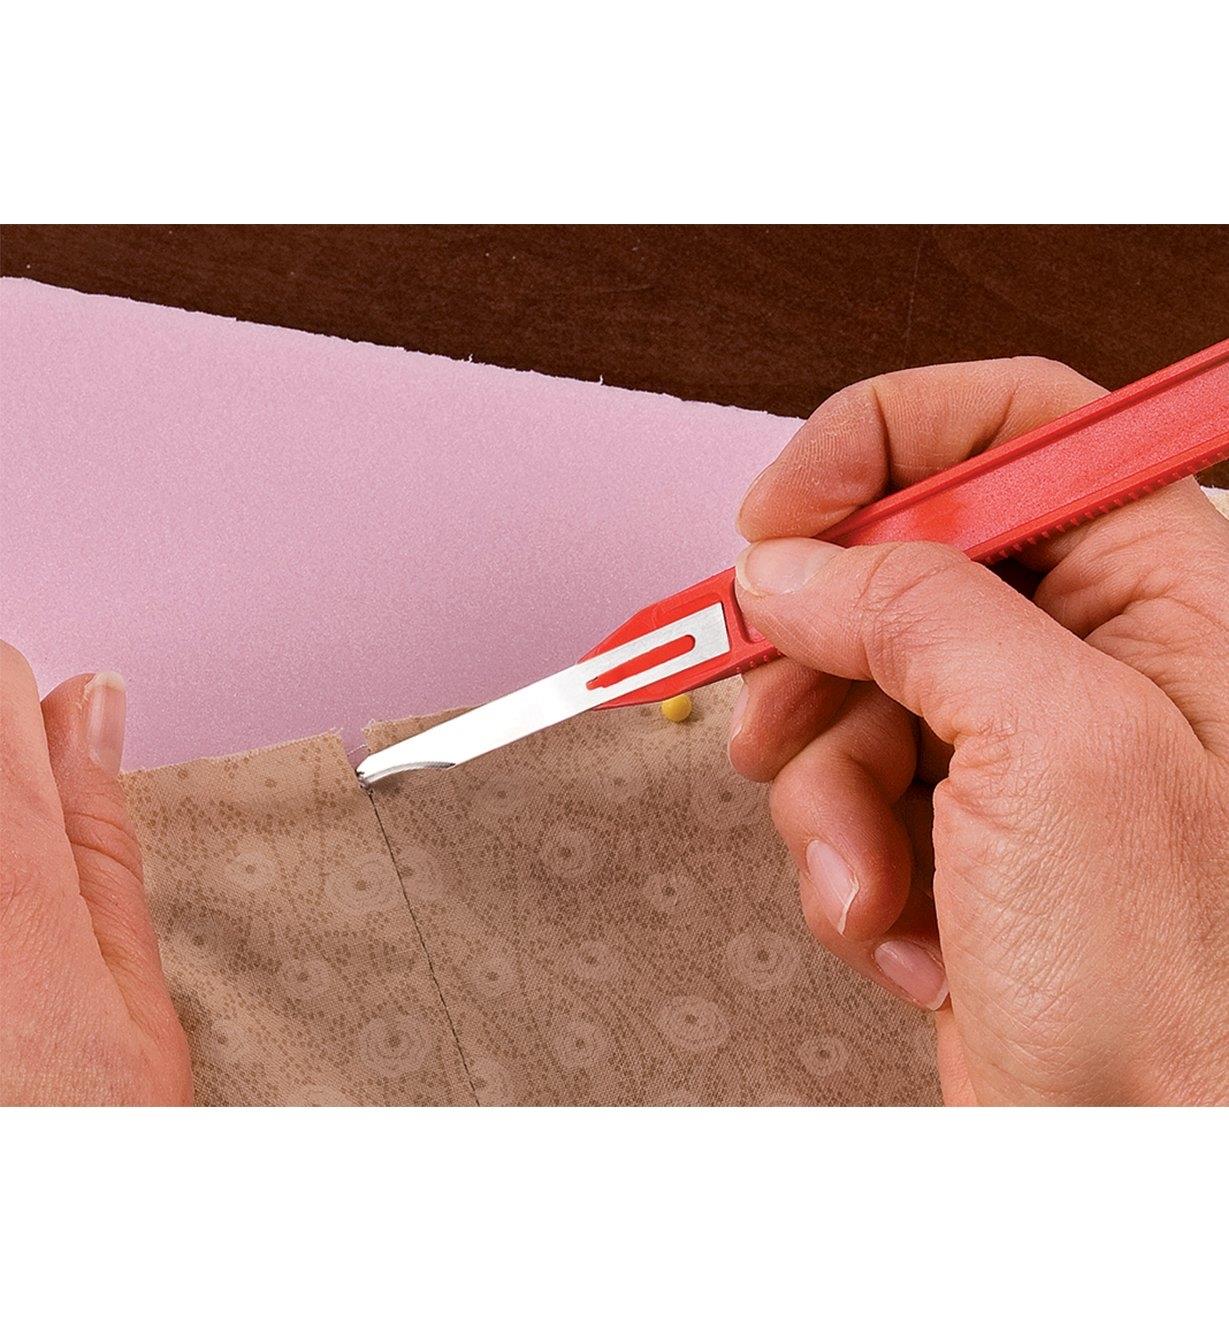 Personne utilisant un outil à découdre muni d'une lame à pointe tranchante pour défaire les premiers points d'une couture